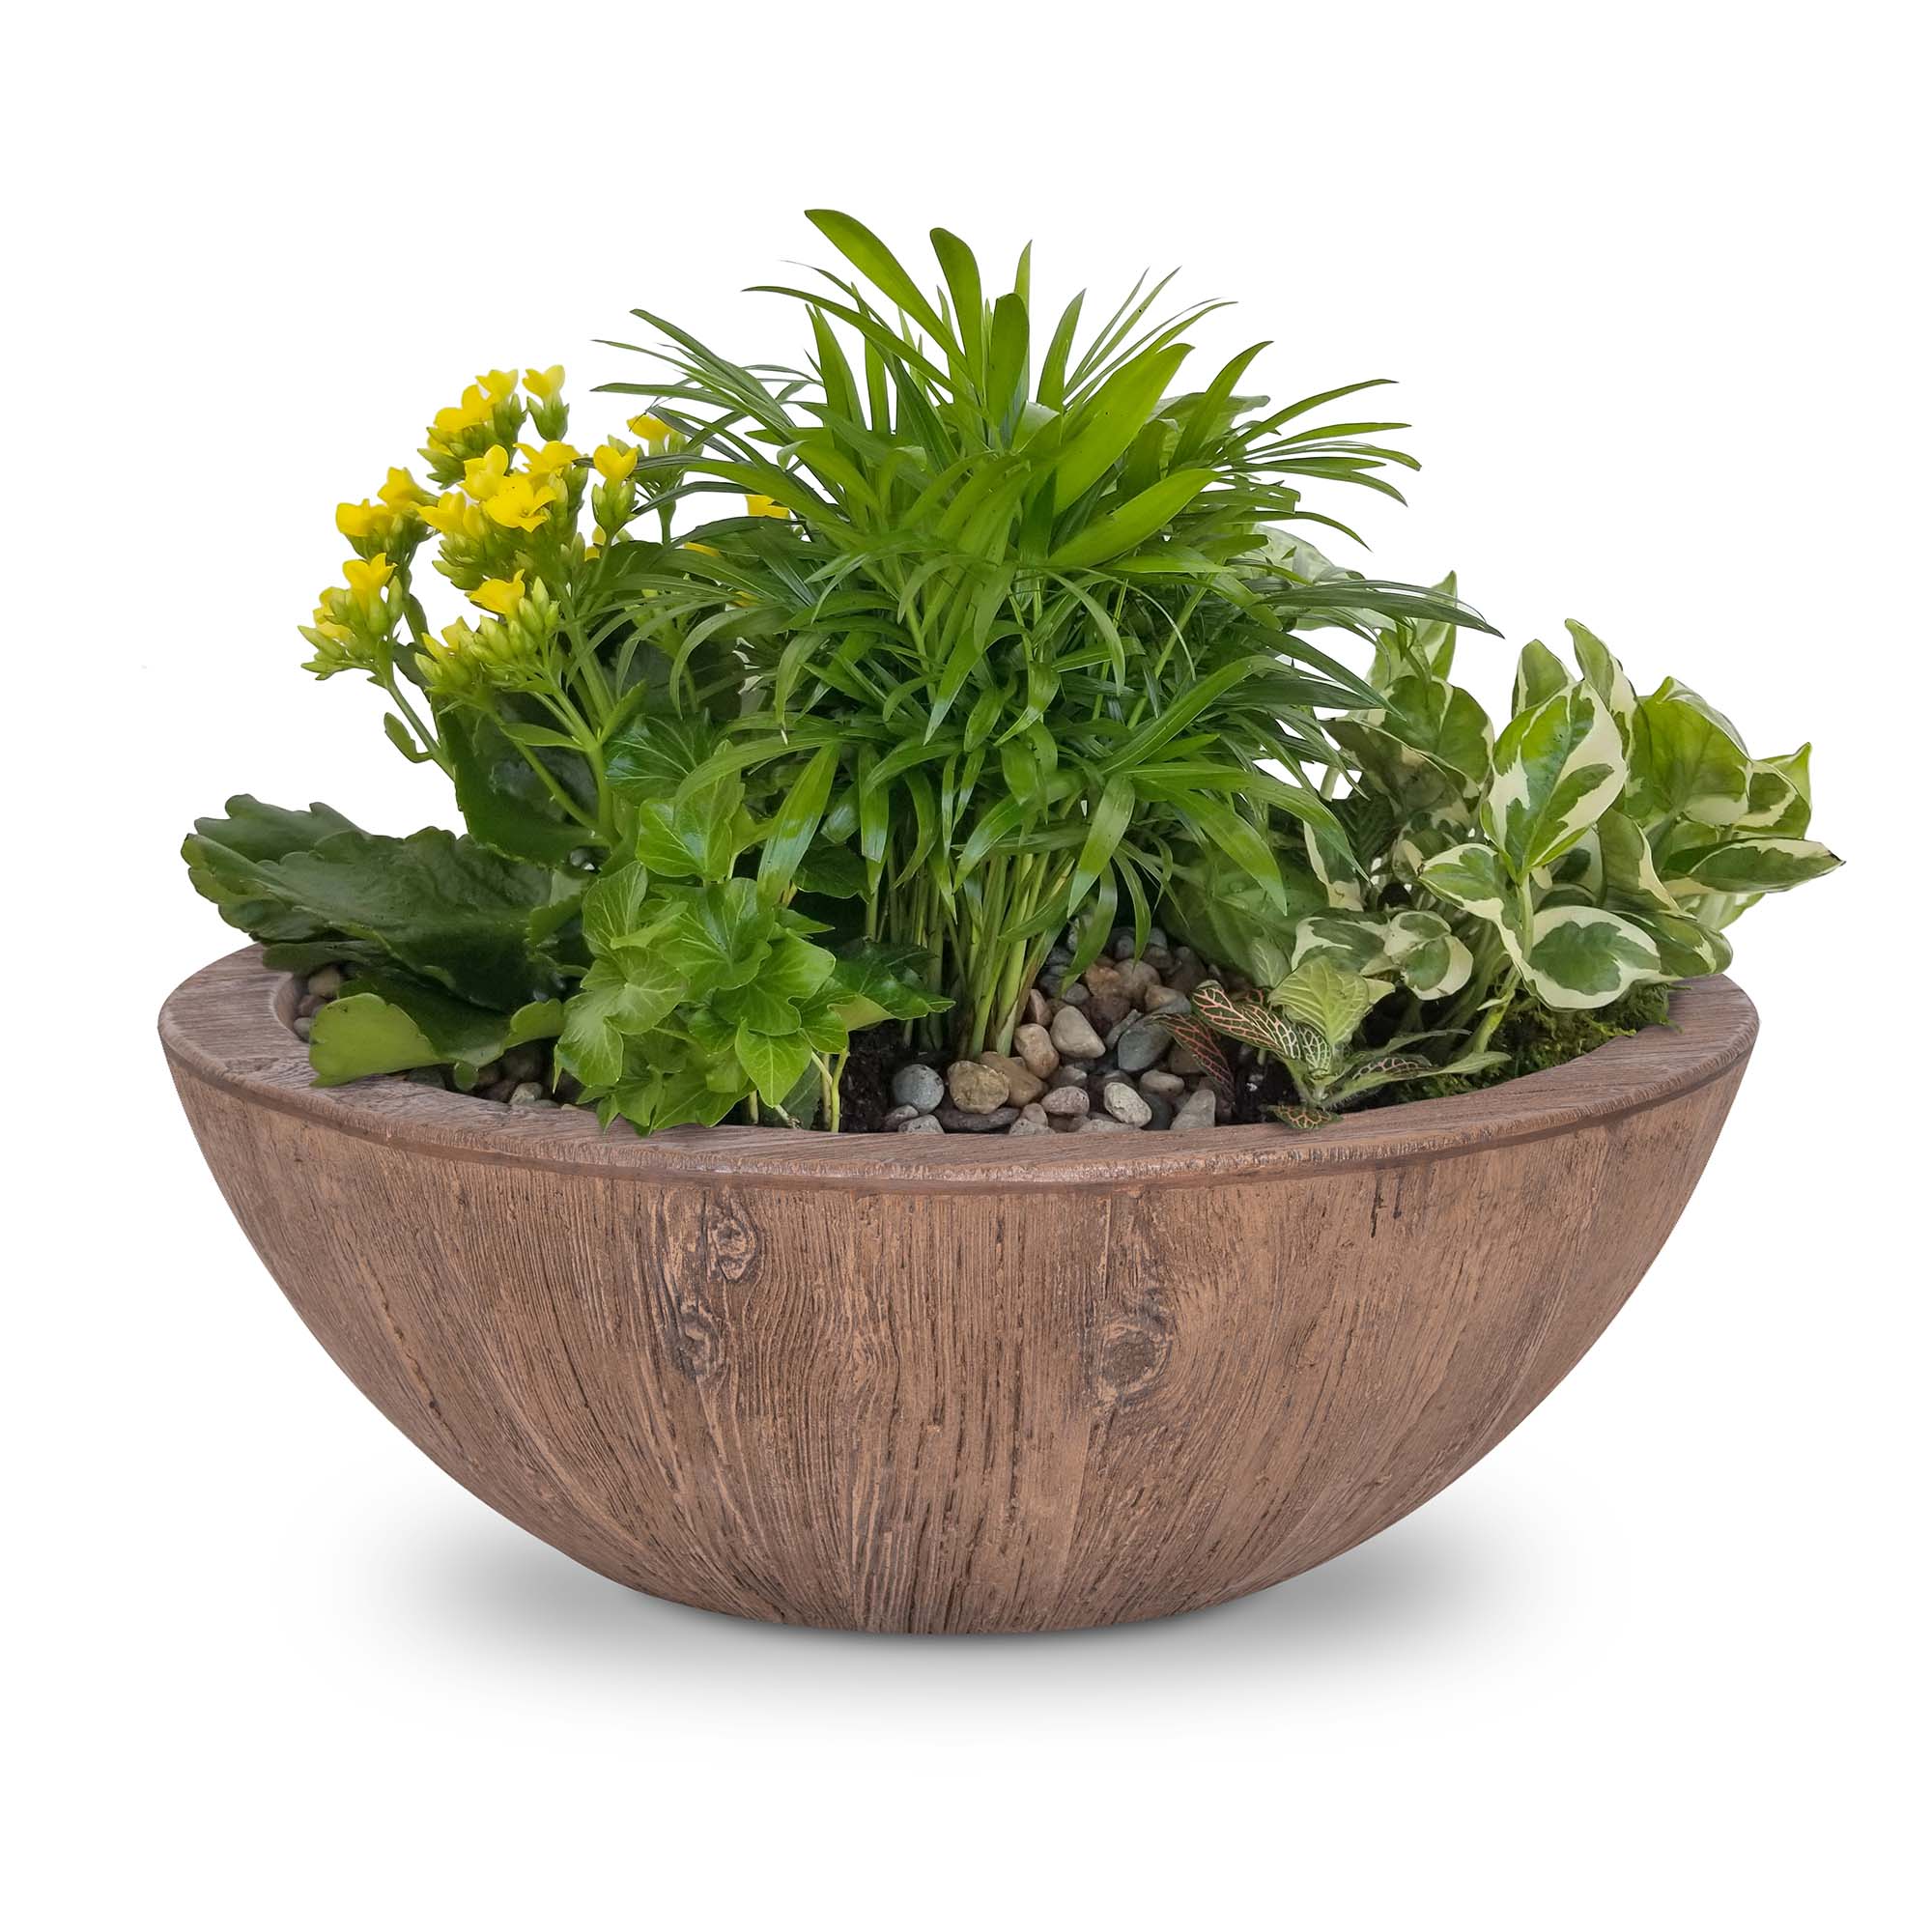 The Outdoor Plus Planter Bowl Oak The Outdoor Plus 27" Sedona Planter Bowl | Wood Grain Concrete OPT-27RWGPO